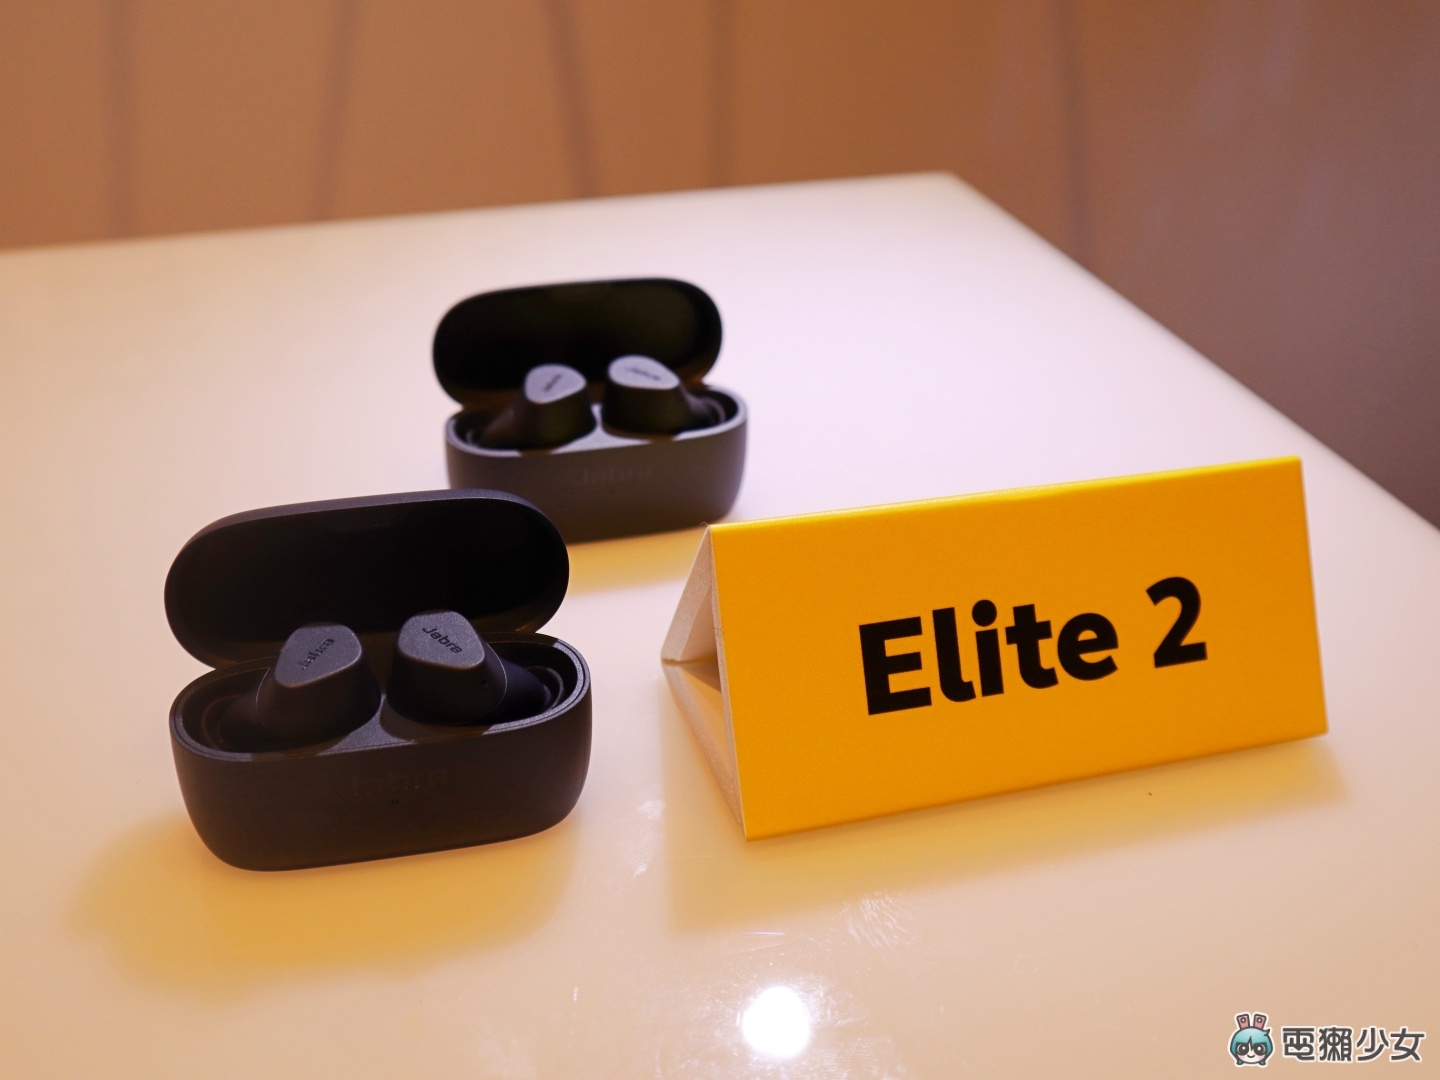 出門｜Jabra 推出兩款真無線藍牙耳機：Elite 7 Pro 主打清晰通話、Elite 7 Active 專用運動用戶設計